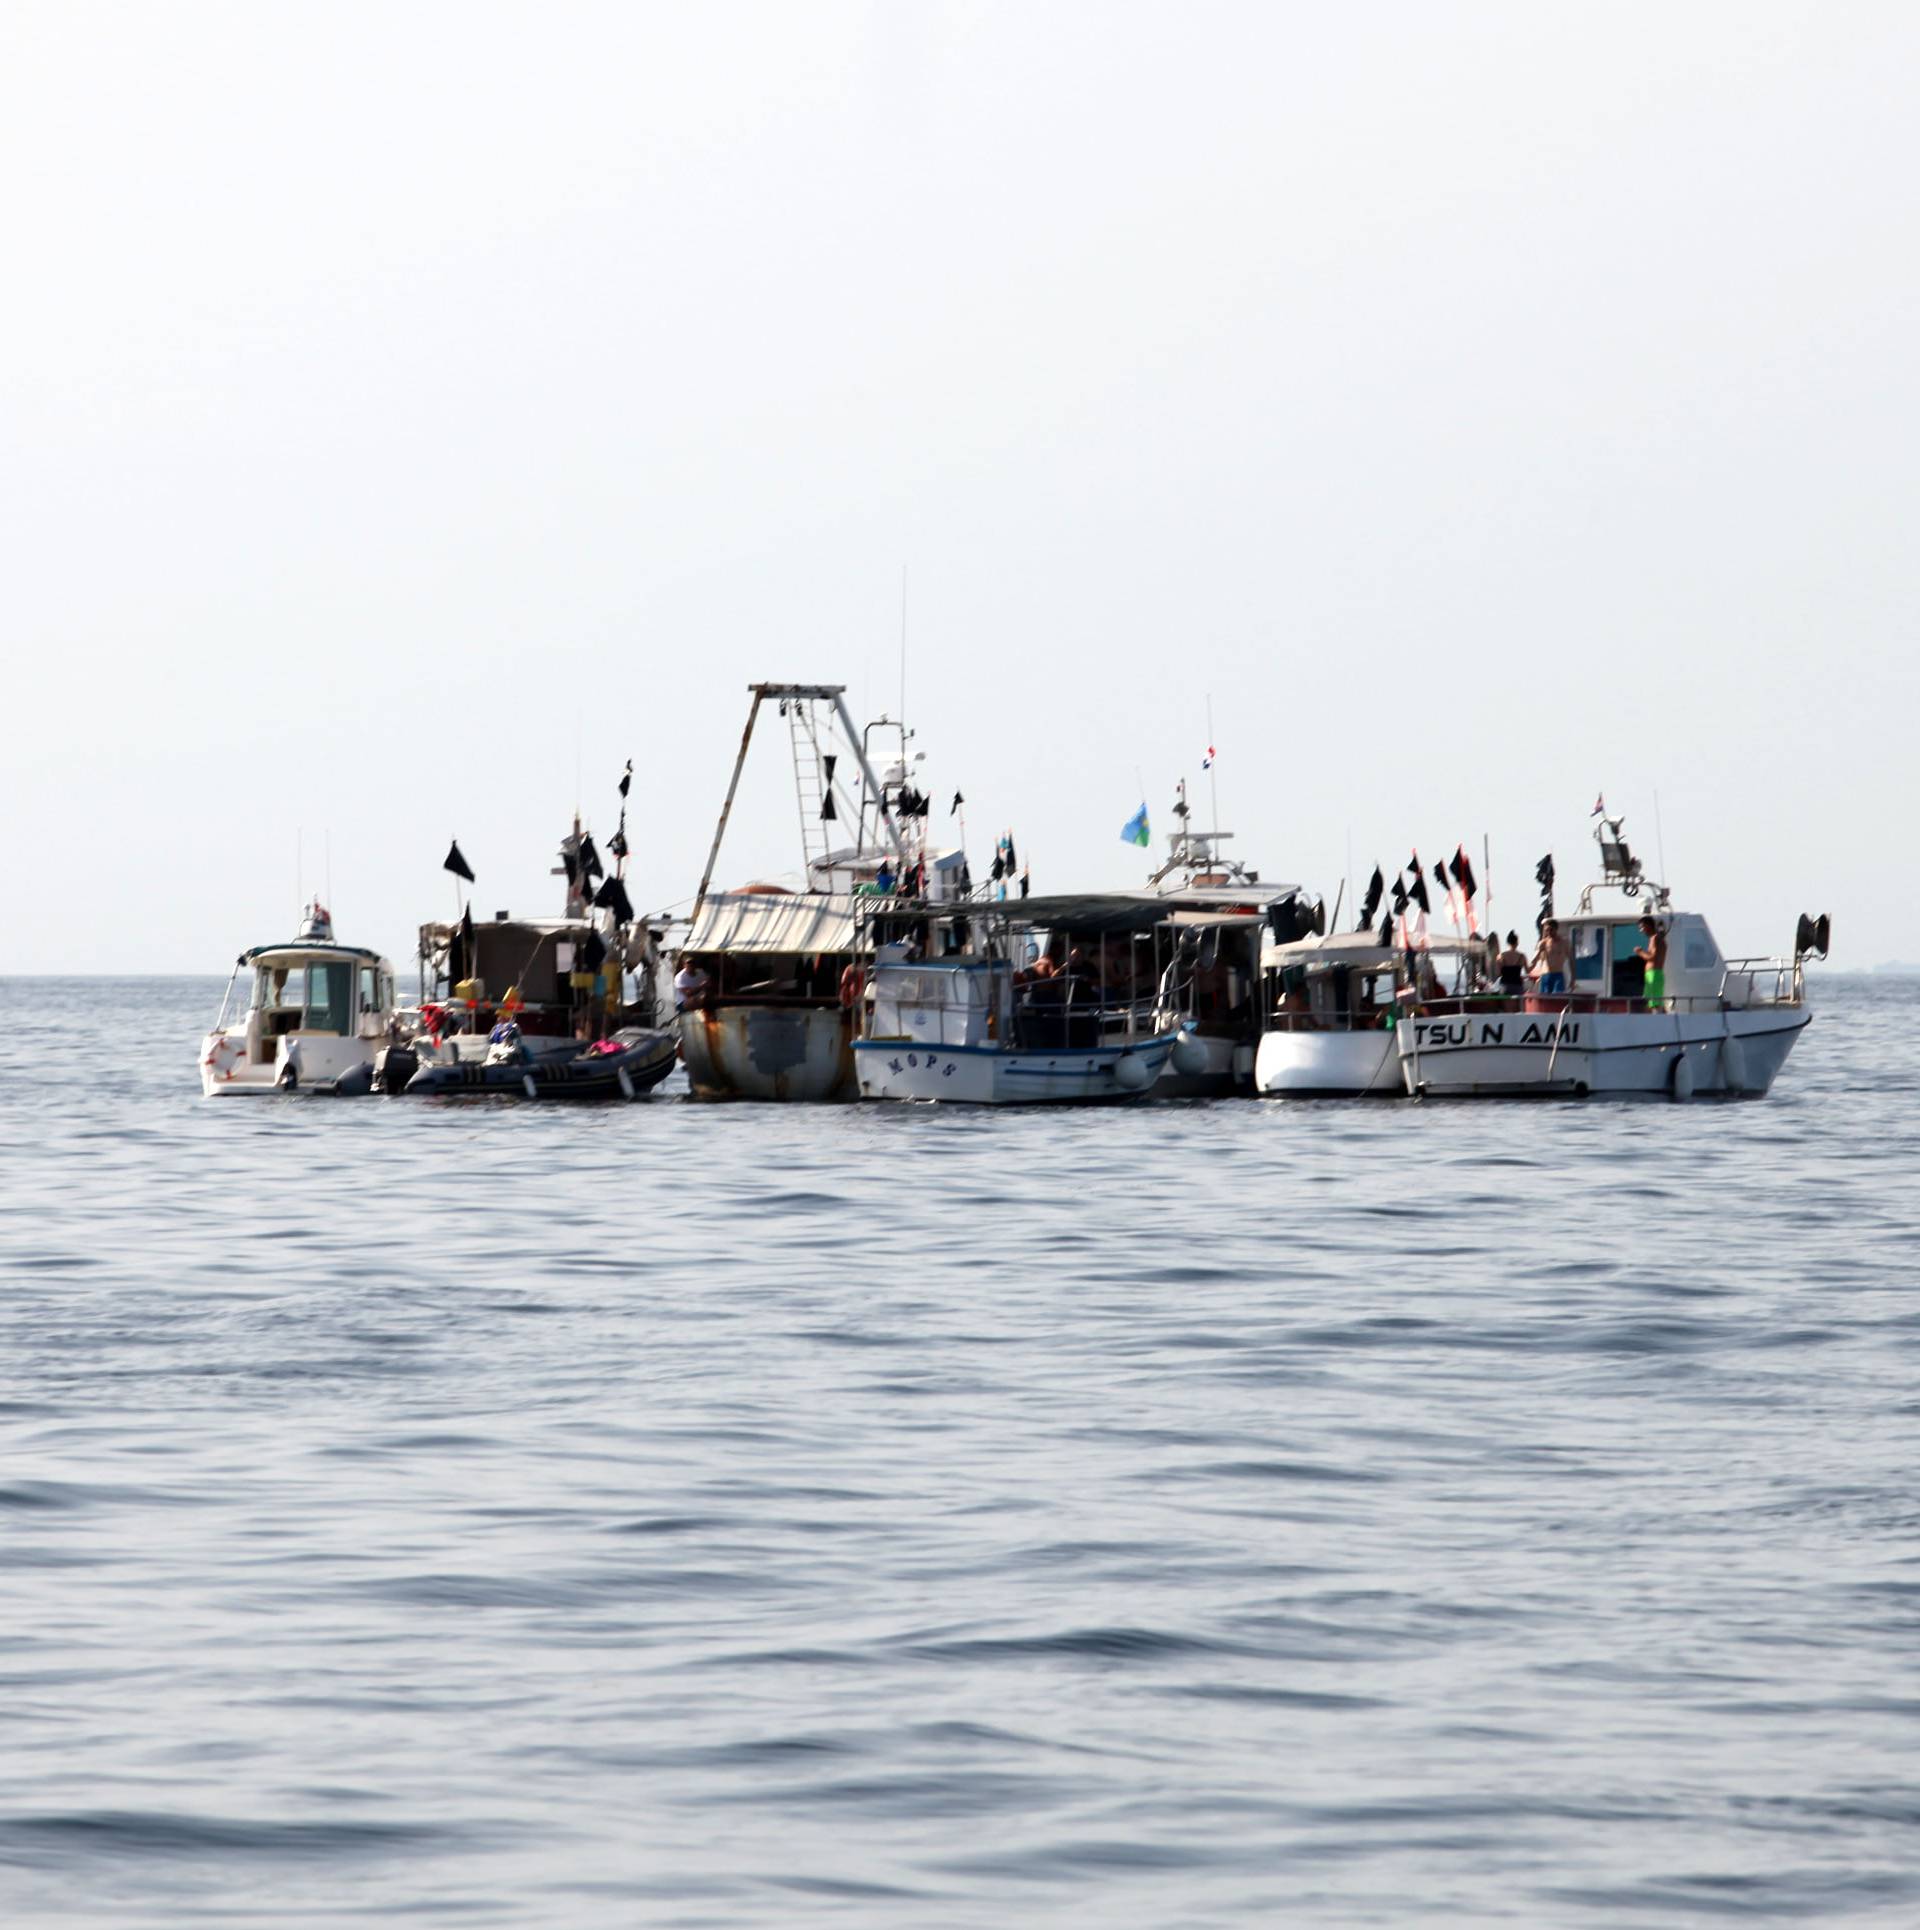 "Najavljene kazne ribarima su besmislene i nemoguće"